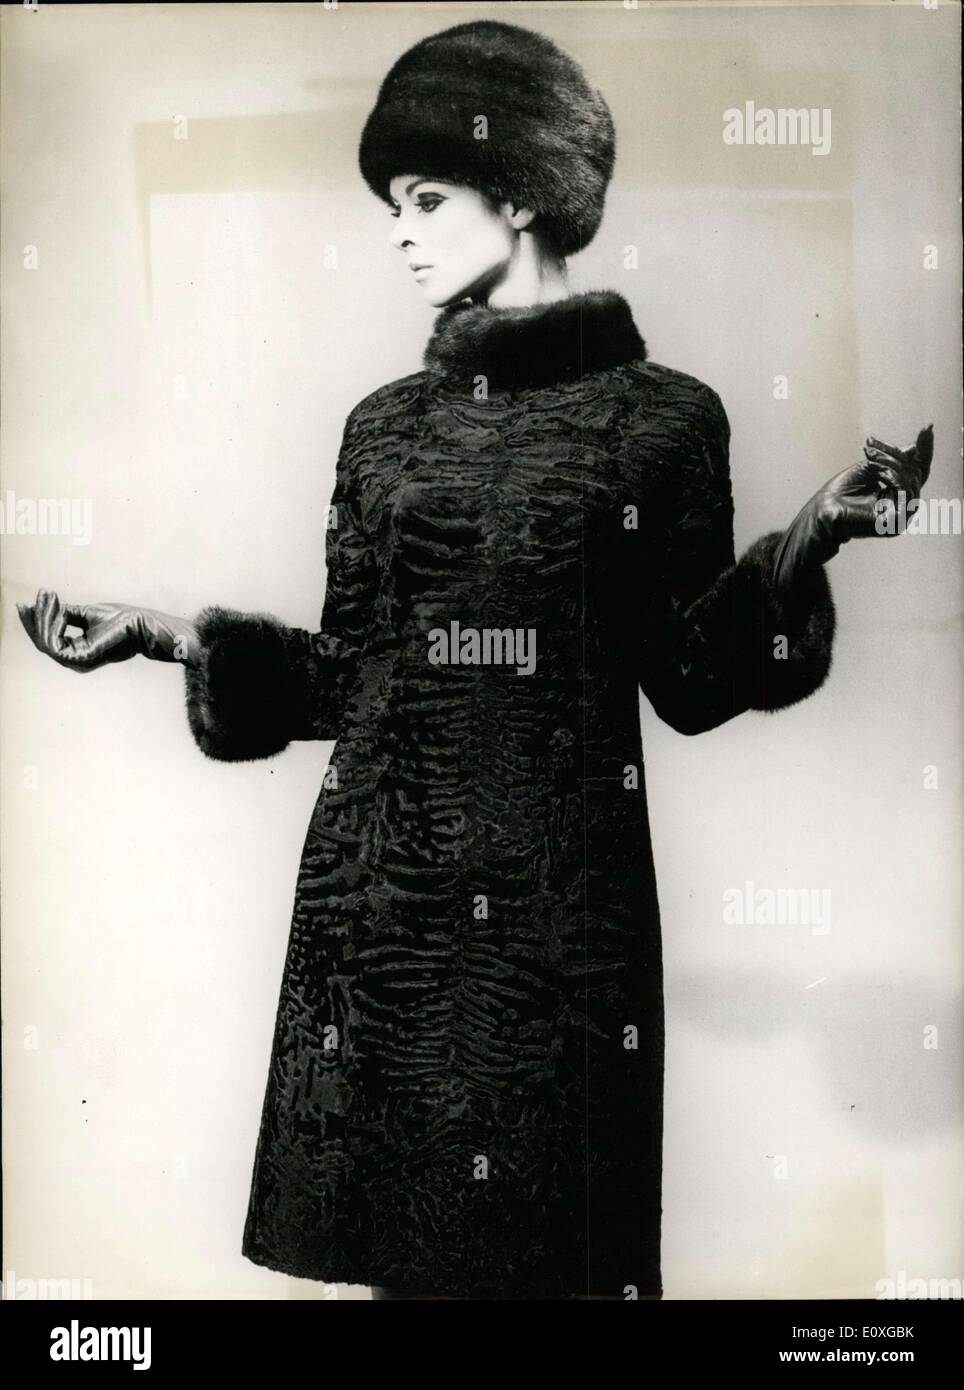 Sett. 10, 1966 - Il classico abito elegante-giacca è stata realizzata in forma arrotondata astrakhan moda e guarnita con pelo lungo il collo e polsi. Foto Stock